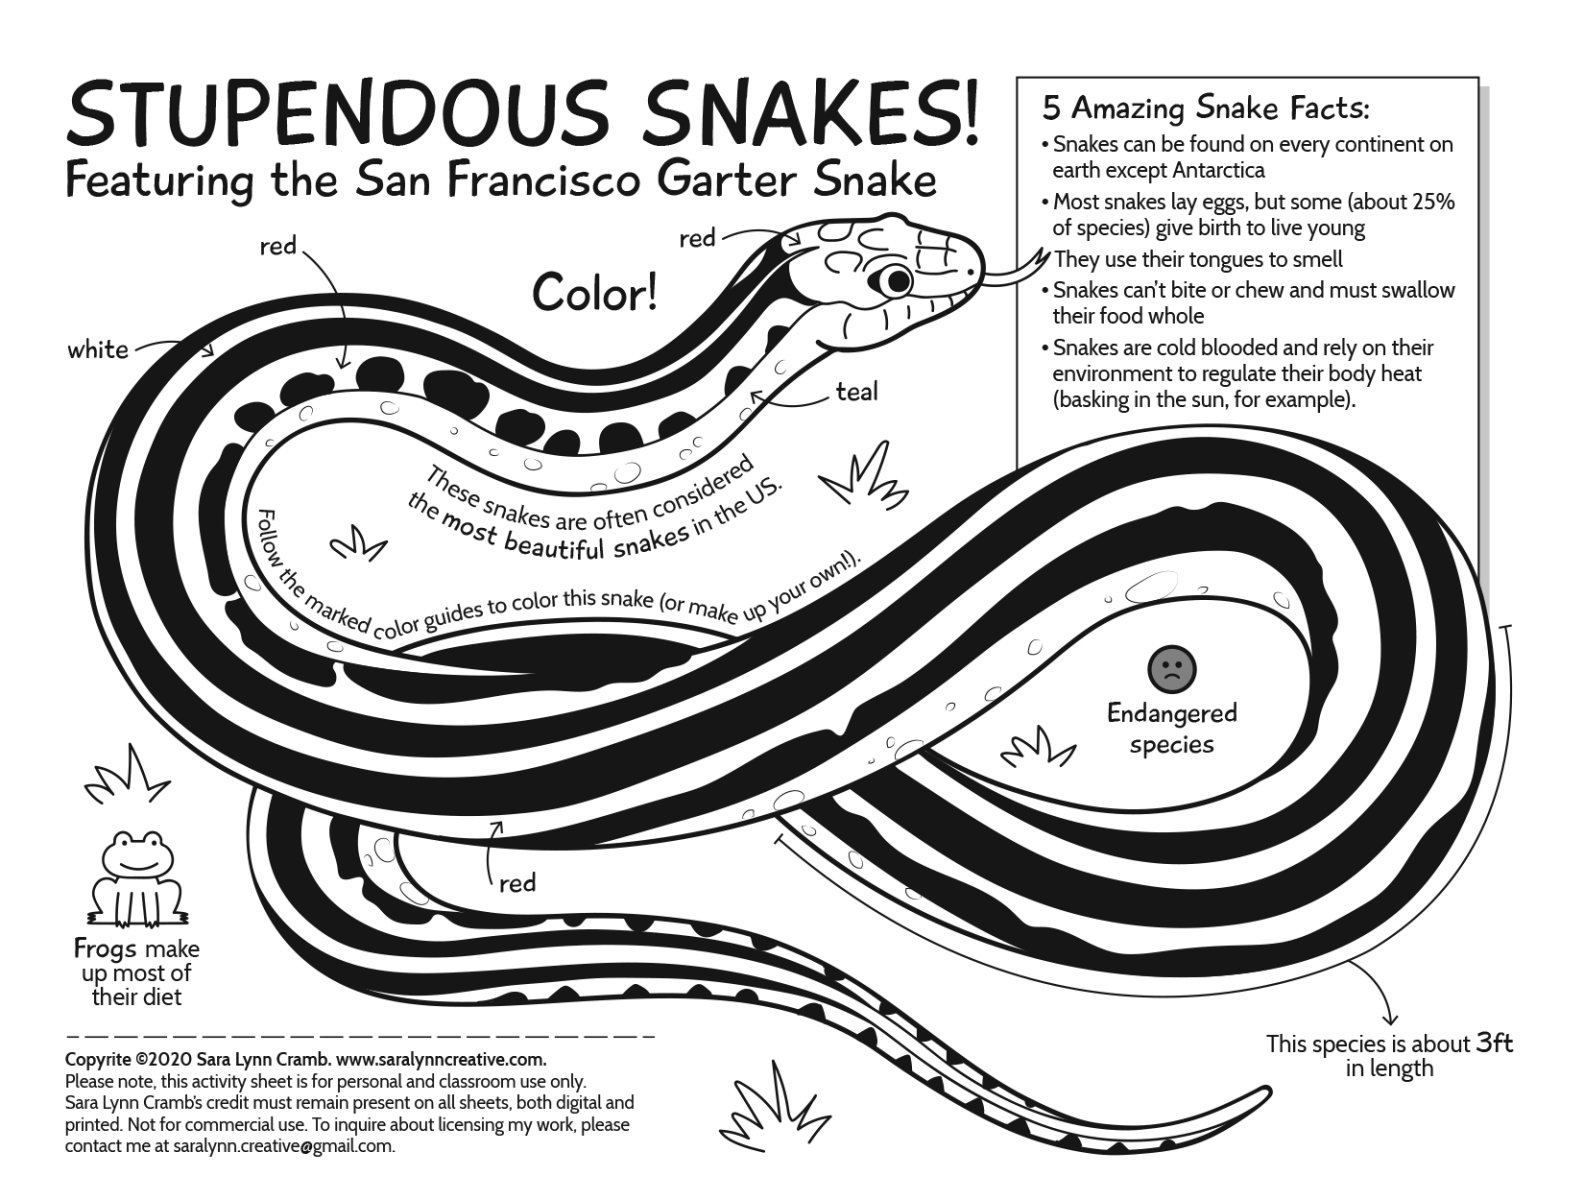 snake activitiy sheet